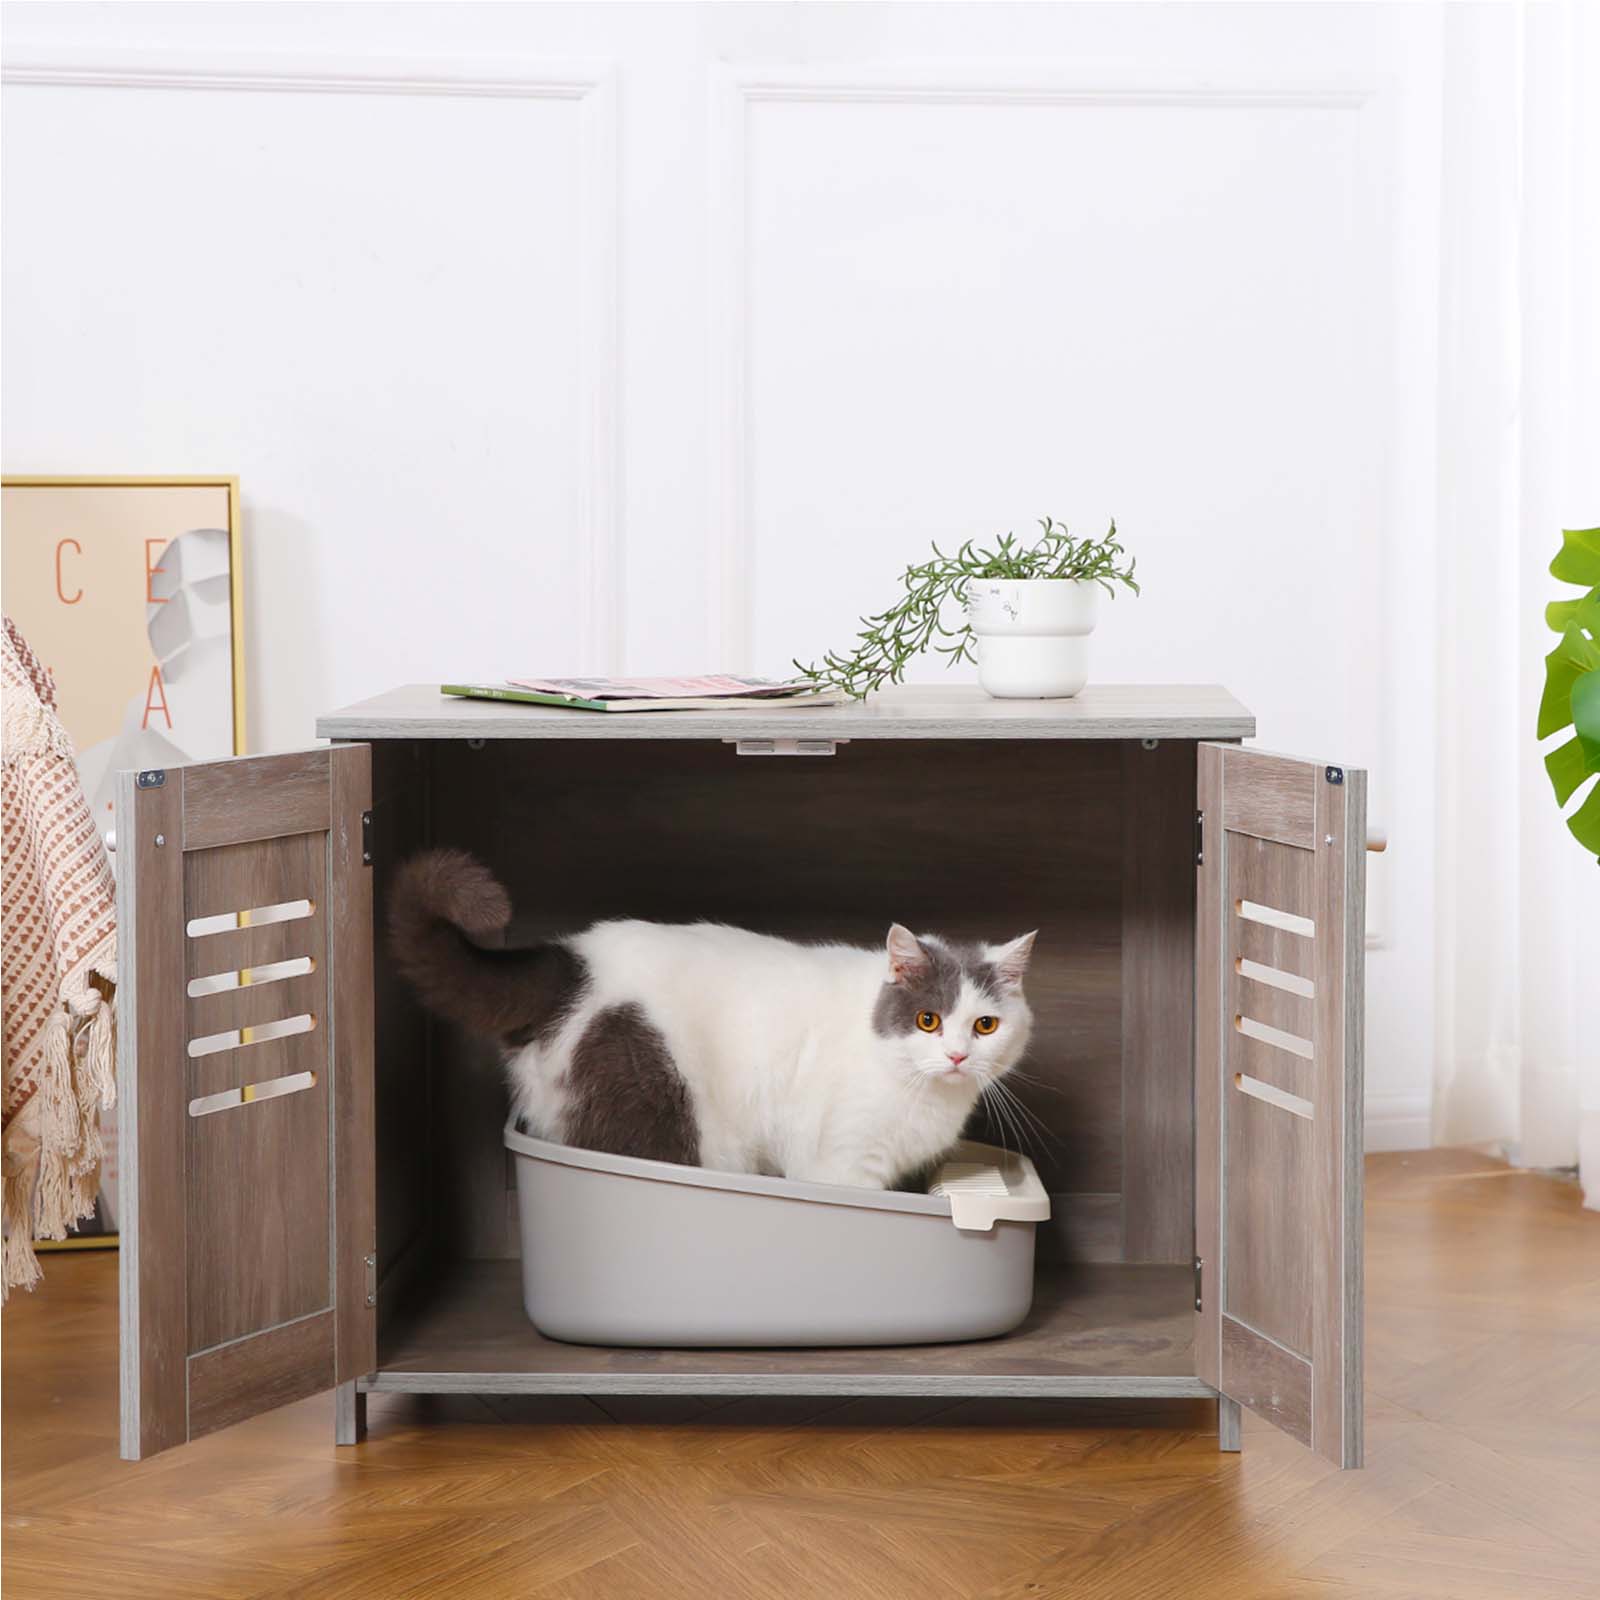 2-in-1 Cat Litter Box Enclosure Antique Grey - Double Door Litter Box Furniture